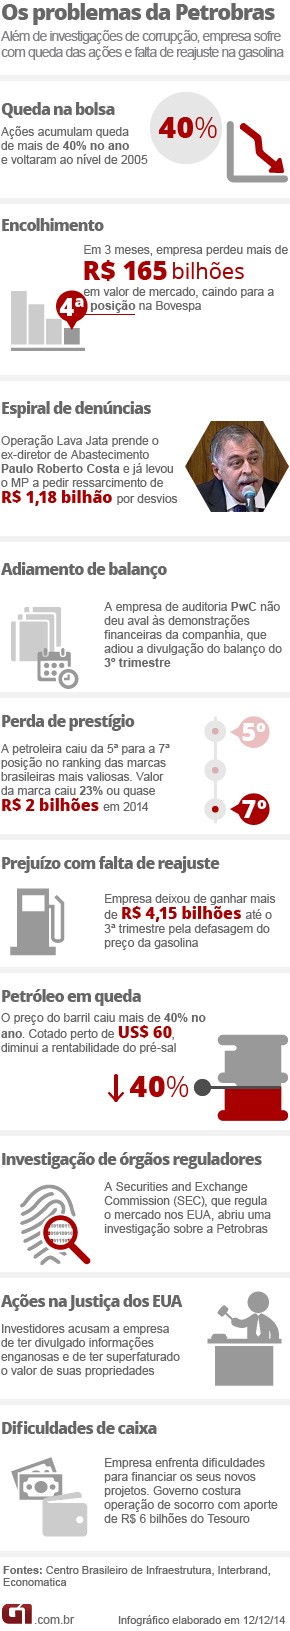 Arte problemas Petrobras (Foto: Editoria de Arte/G1)